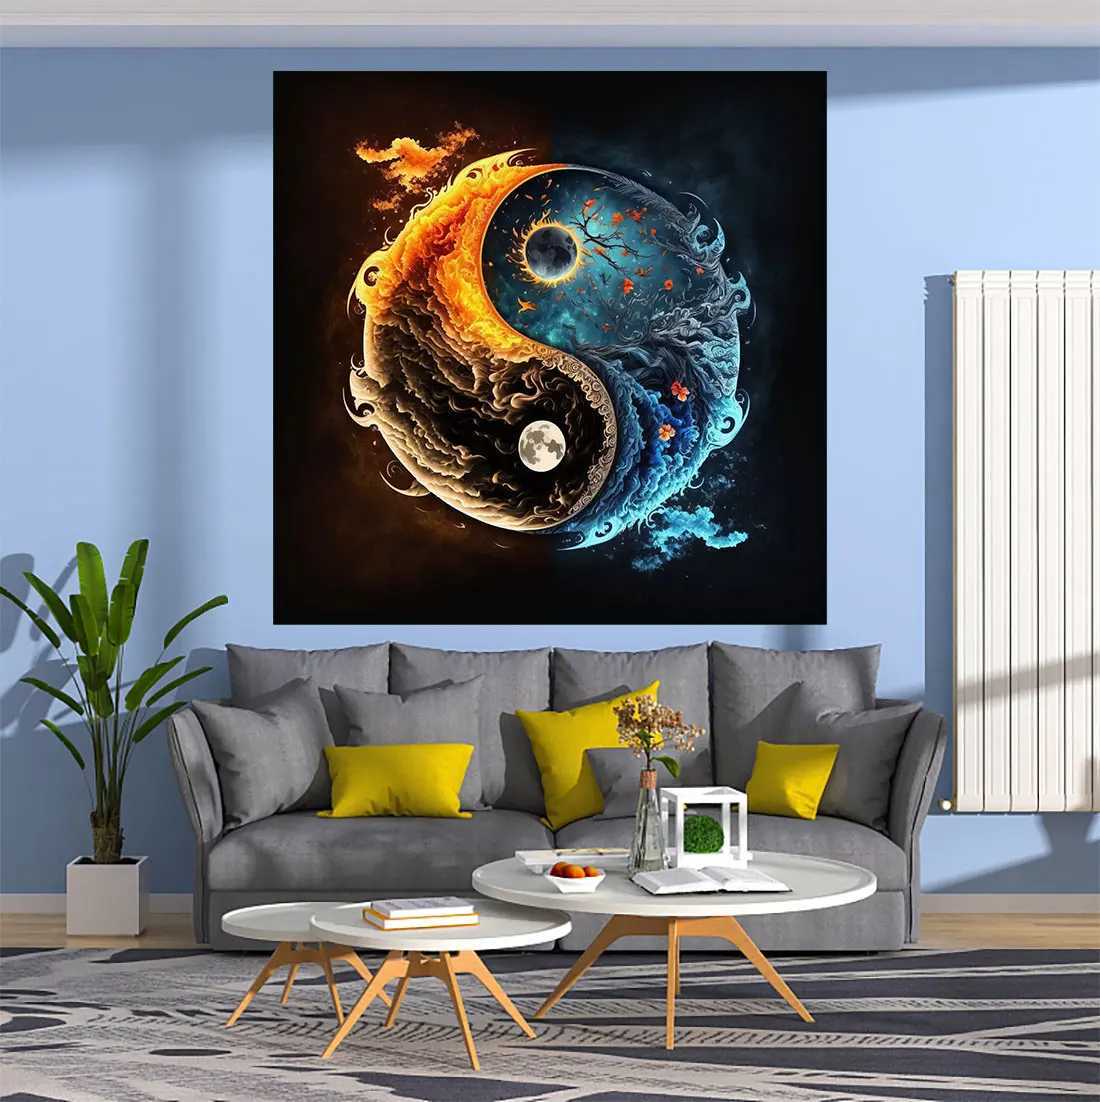 Audio in stile mandala yin yang arazzo cosmico galassia muro stampato decorativo decorativo in tessuto da letto decorazioni soggiorno